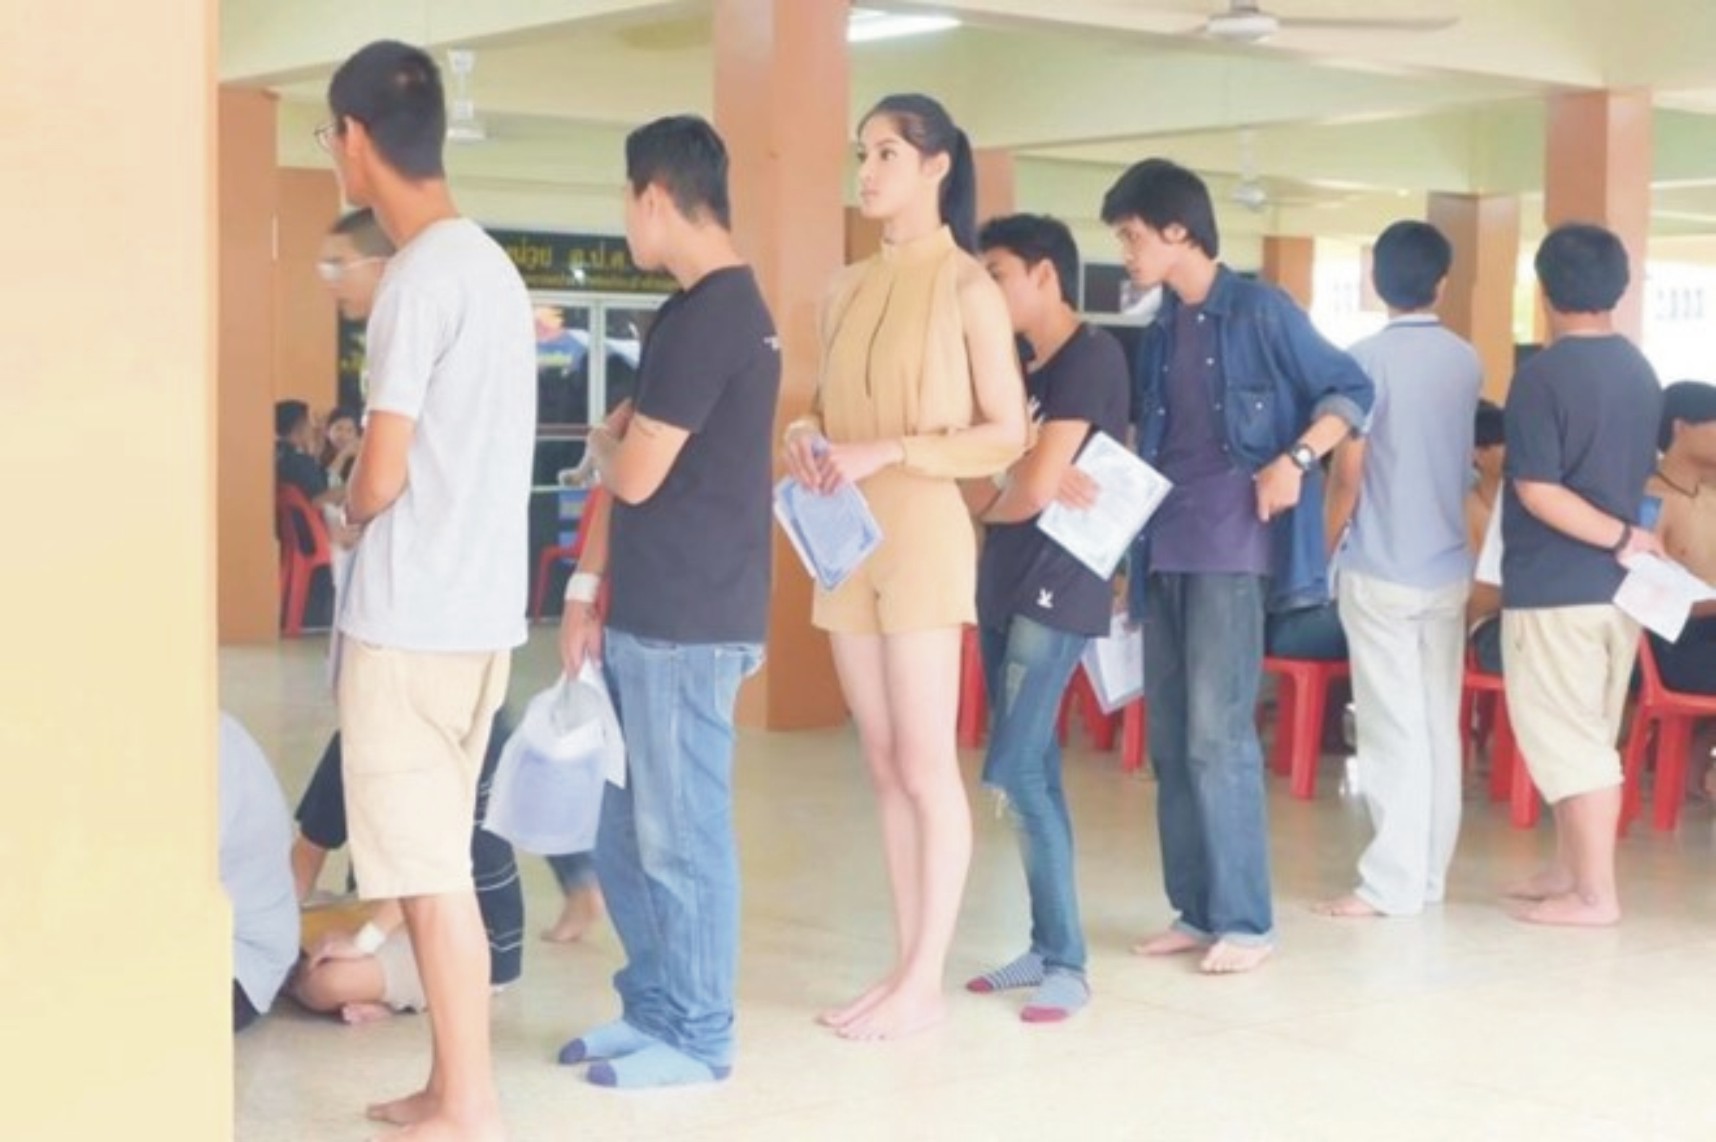 Hoa hậu chuyển giới Thái Lan nổi bật trong khám nghĩa vụ quân sự  泰國服兵役體檢 變性小姐引人注目